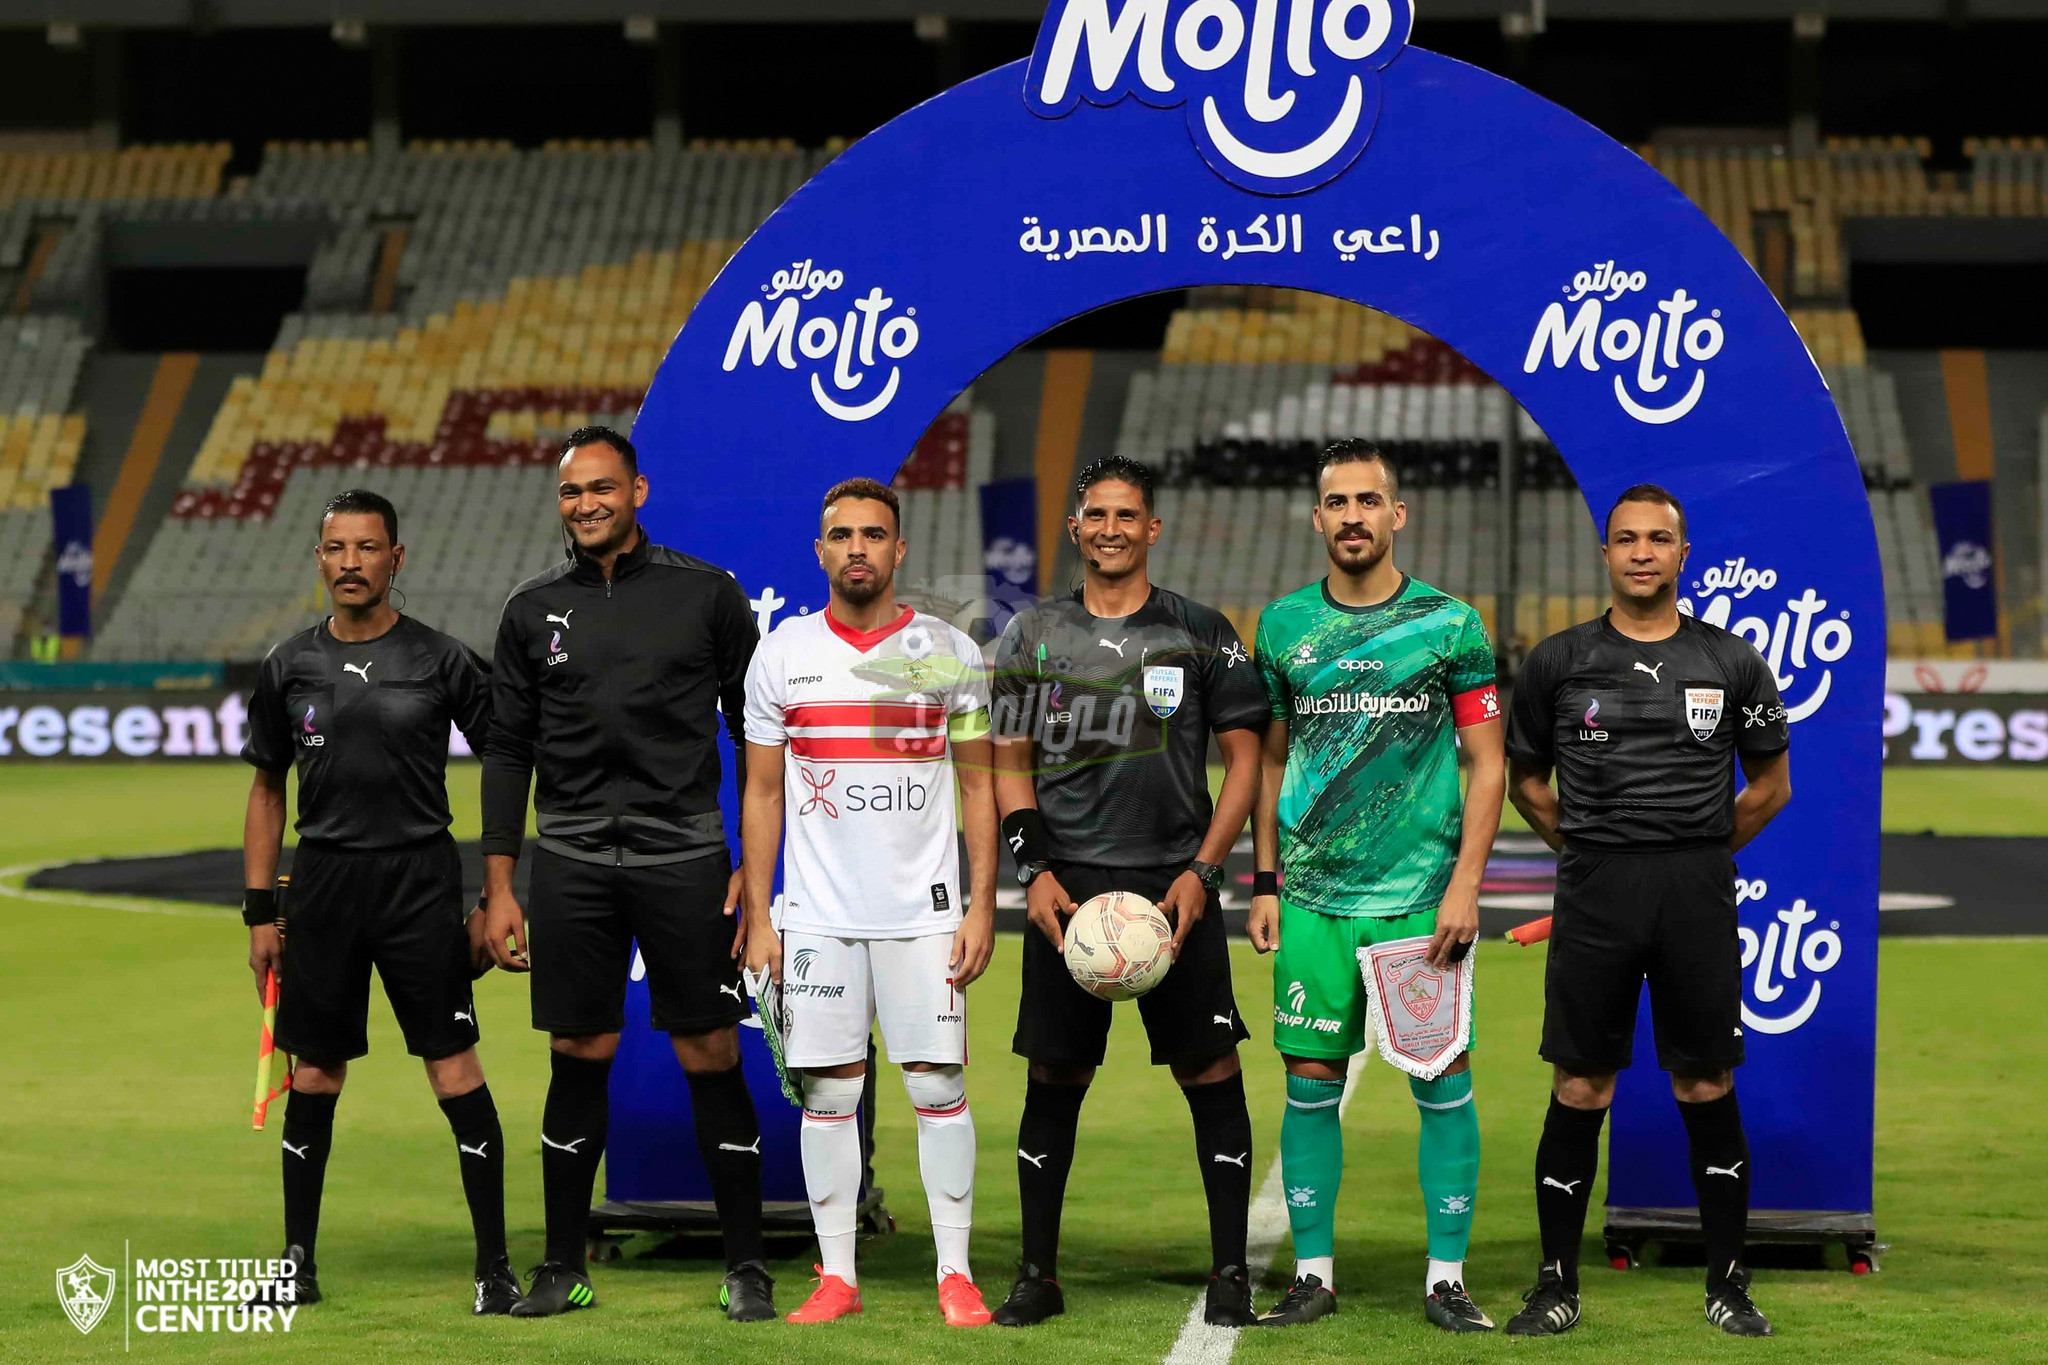 نتيجة مباراة المصري البورسعيدي ضد الزمالك Al Masry Vs Zamalek في الدوري المصري الممتاز